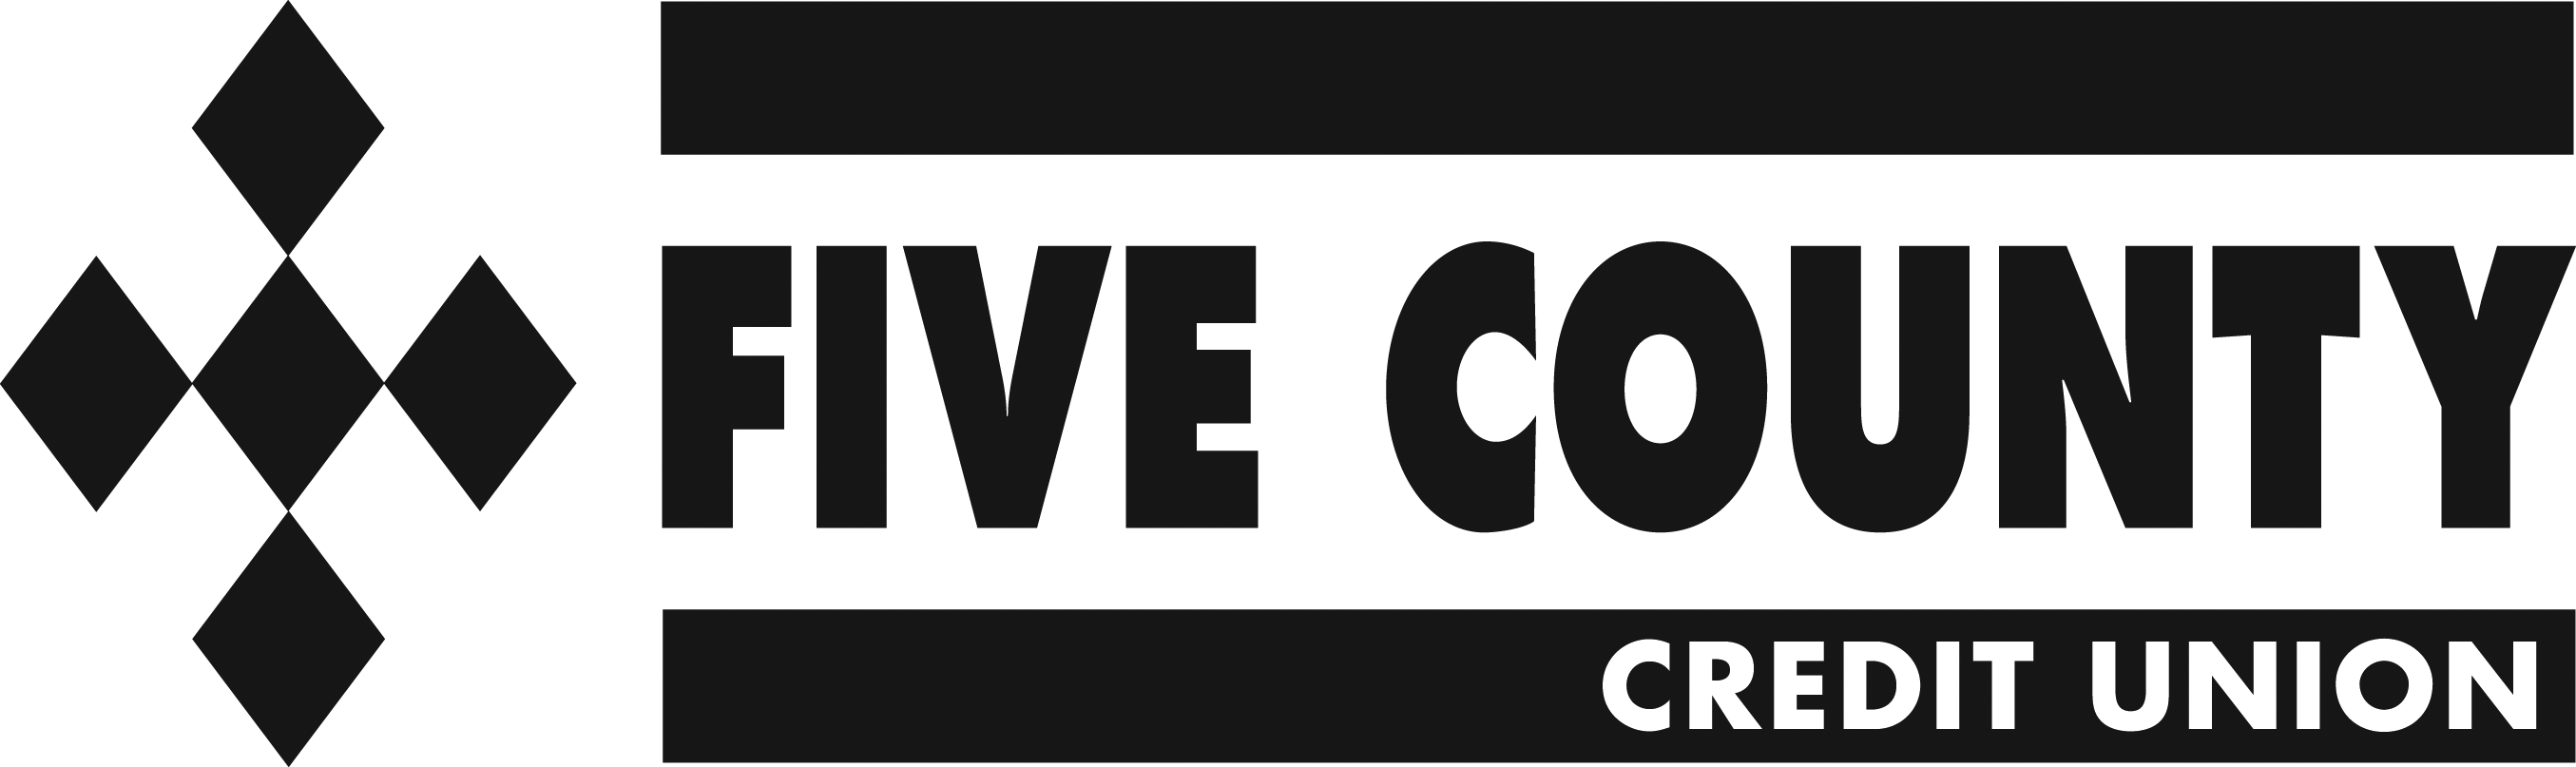 Five County CU Logo